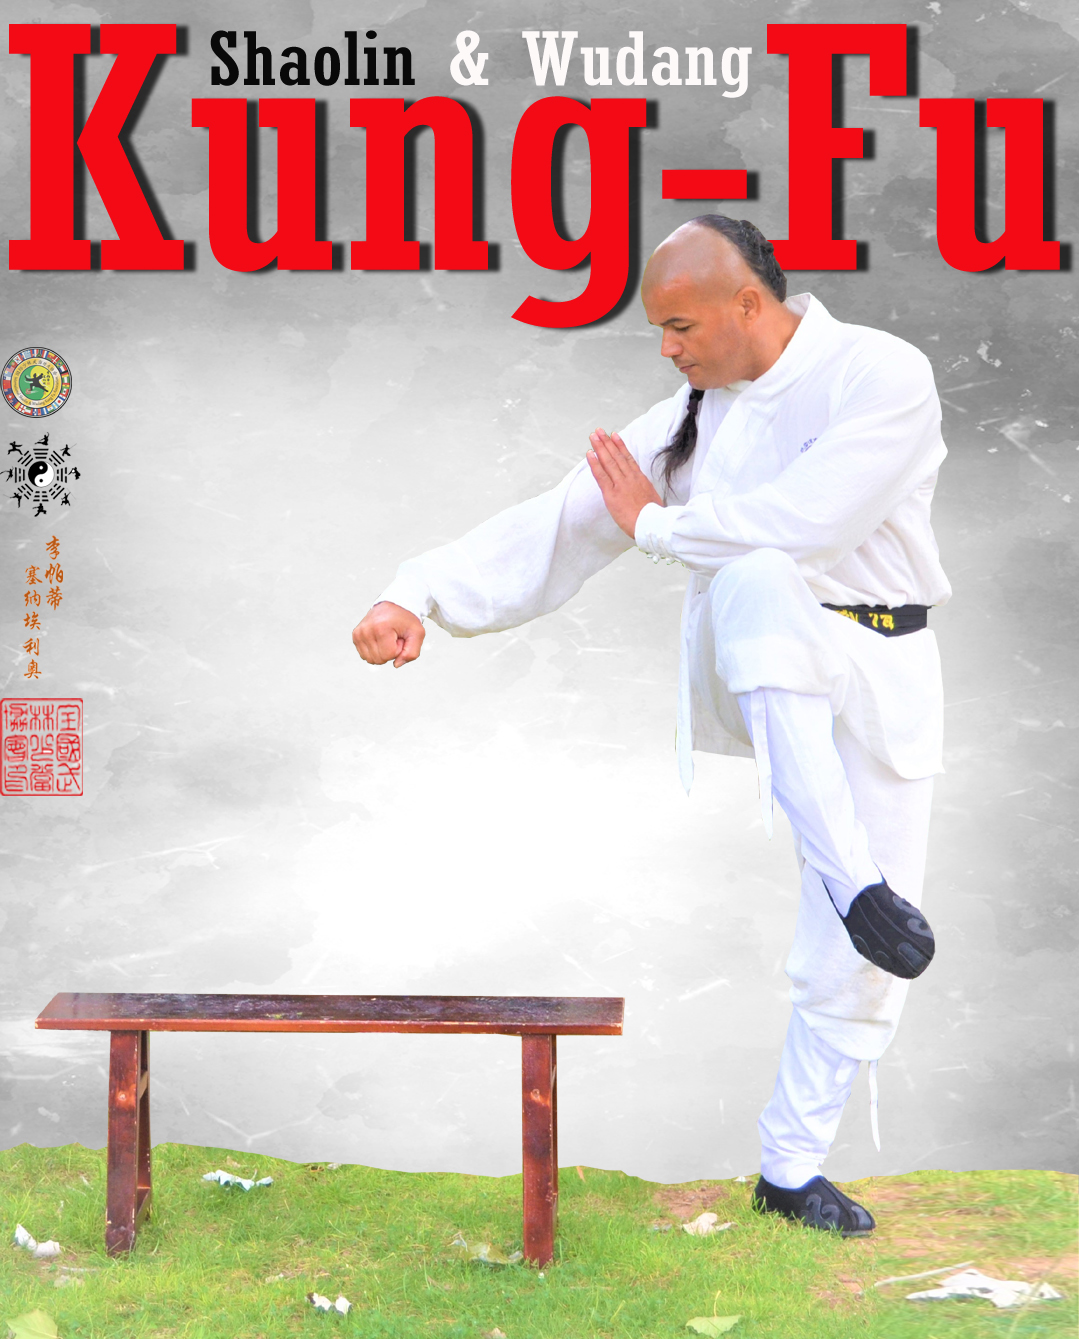 Clases y Cursos de Kung-Fu para niños y niñas en Azuqueca de Henares.